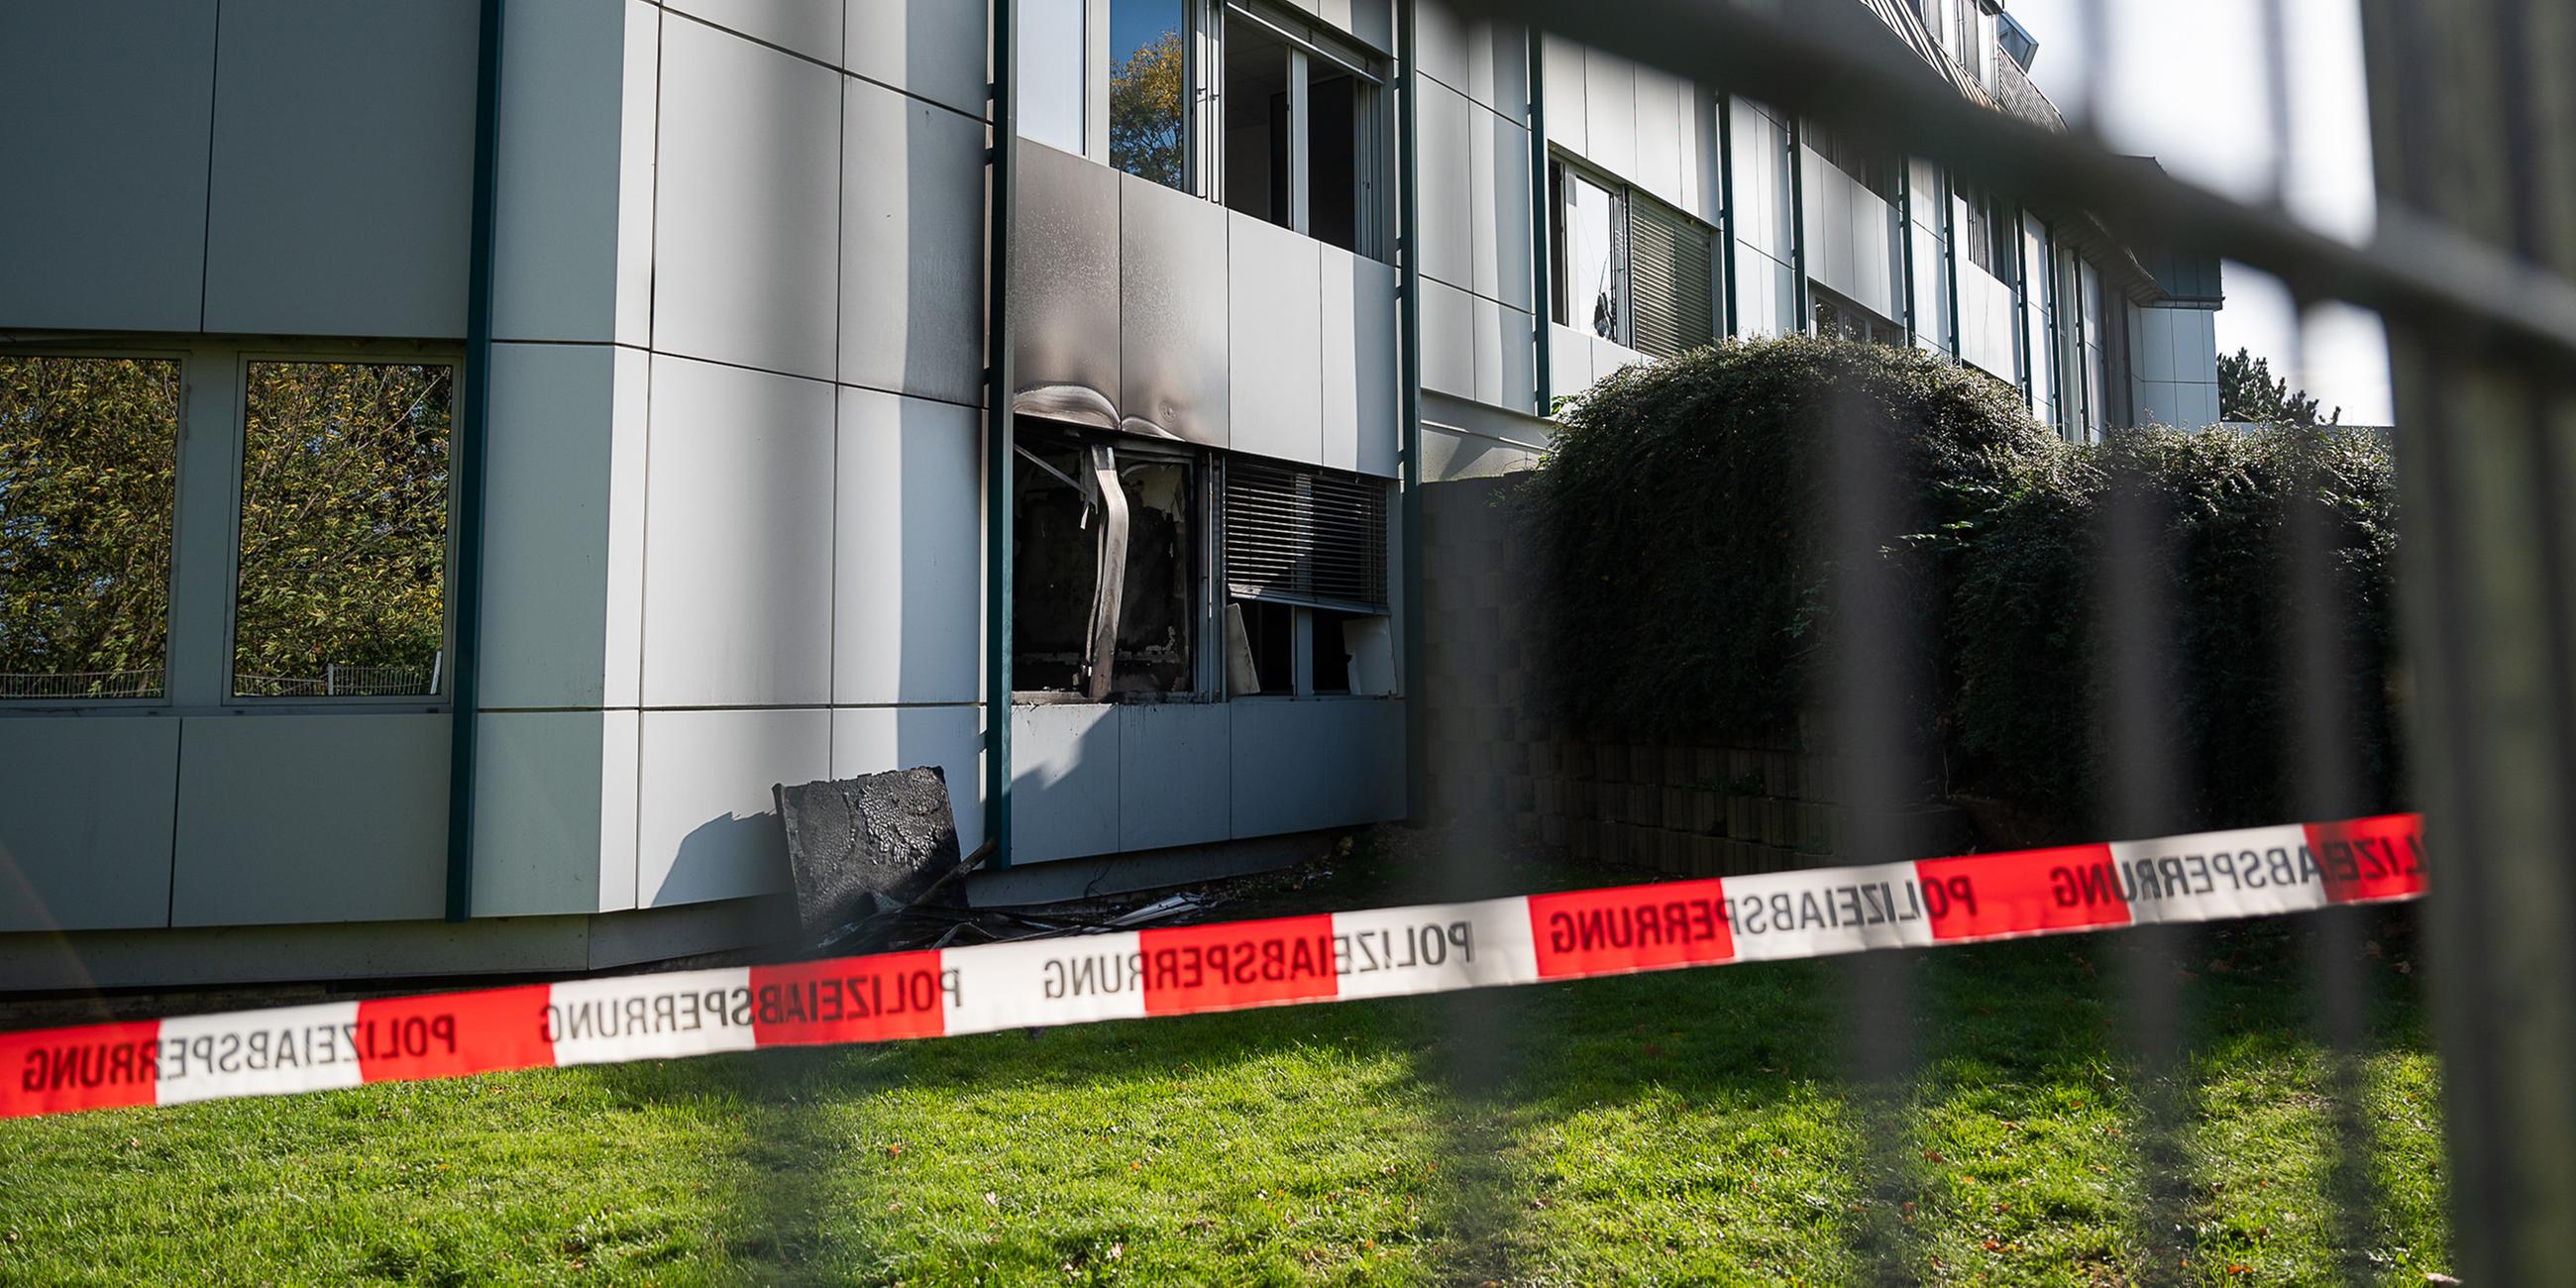 Unbekannte verübten am frühen Freitagmorgen einen Brandanschlag auf geplante Asylunterkunft in Bautzen. 